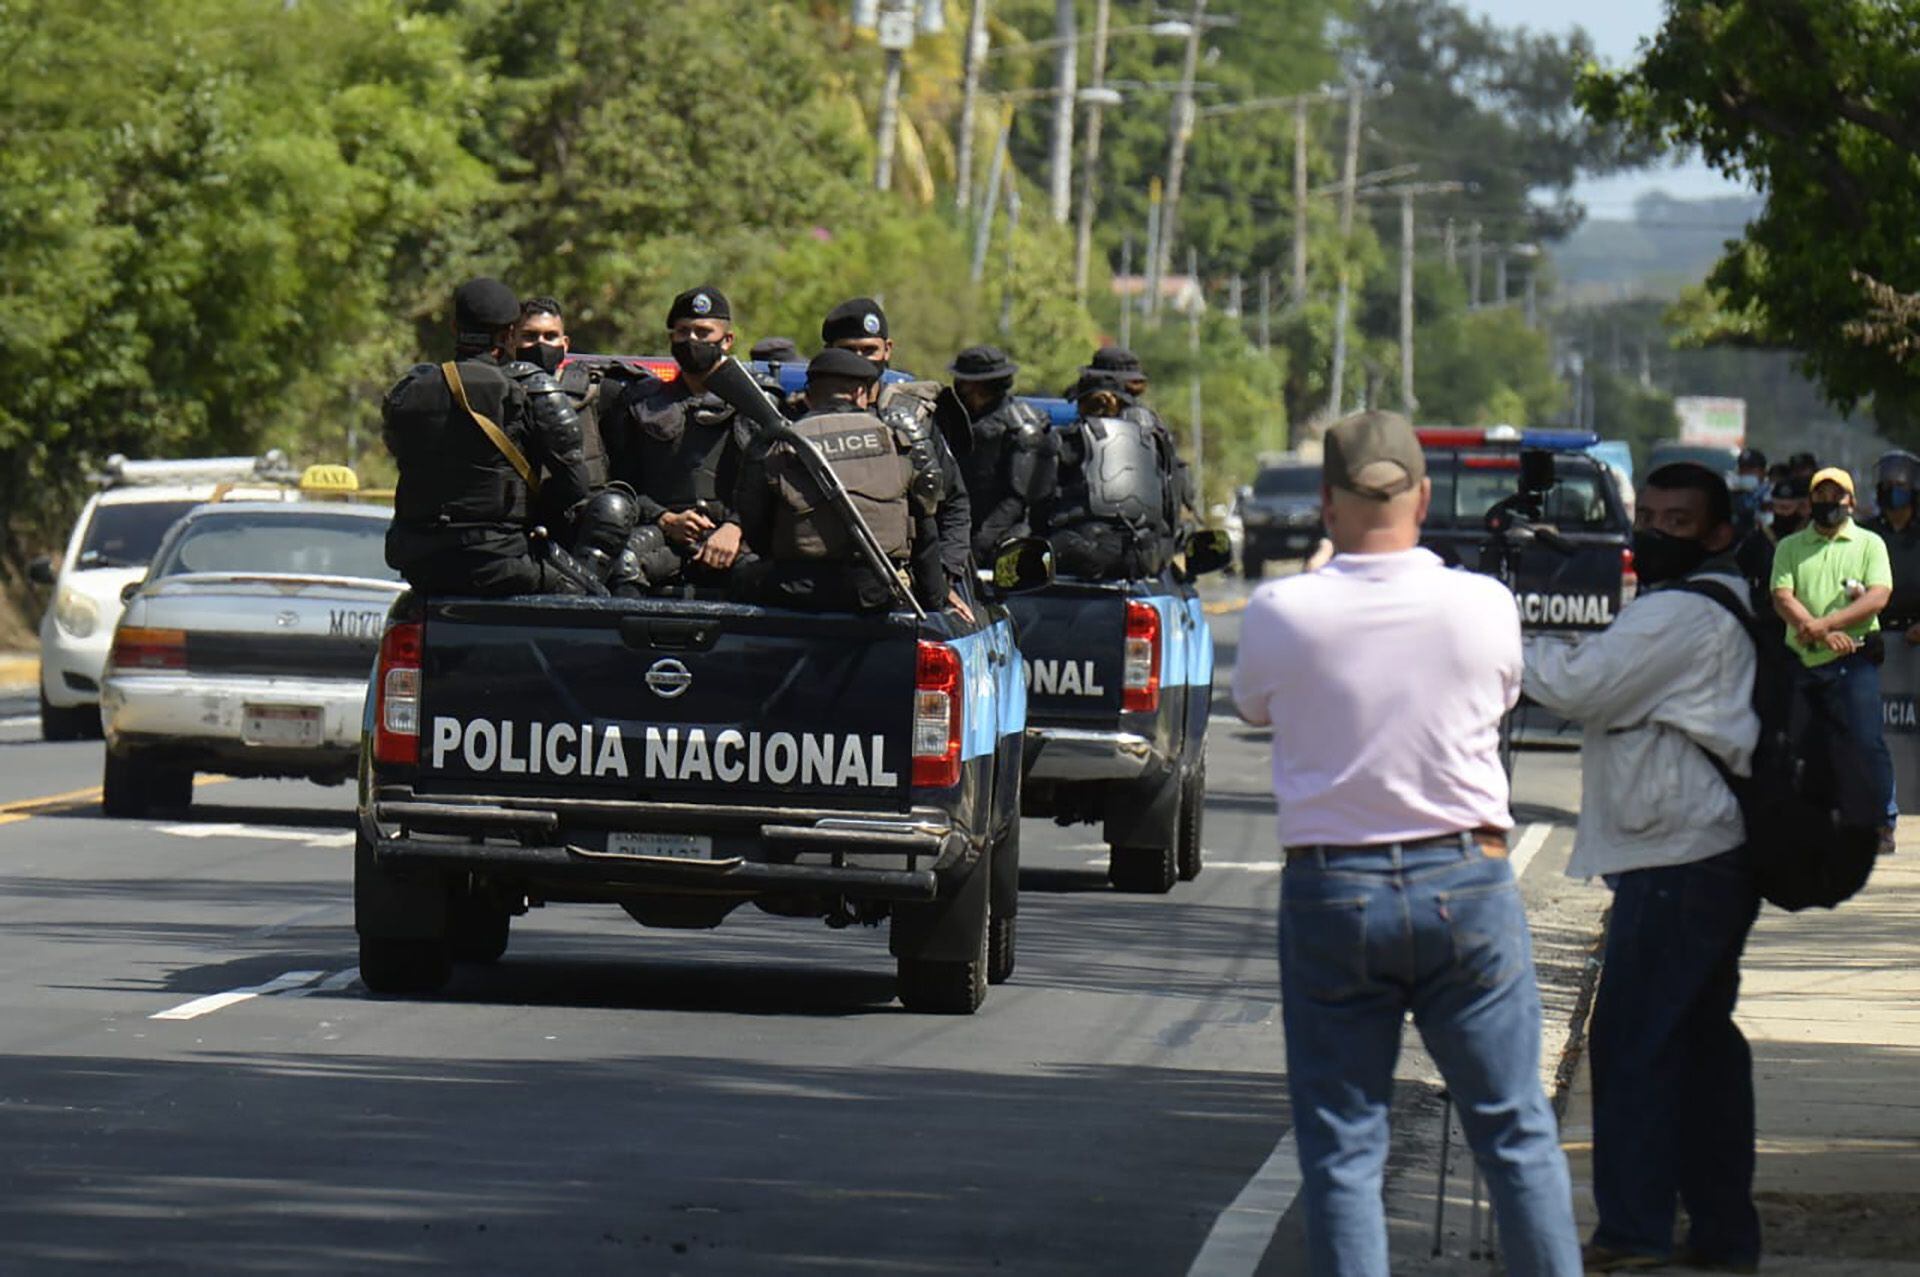 La Policía nicaragüense patrulla las calles y carreteras impidiendo cualquier manifestación política opositora. (Foto La Prensa)